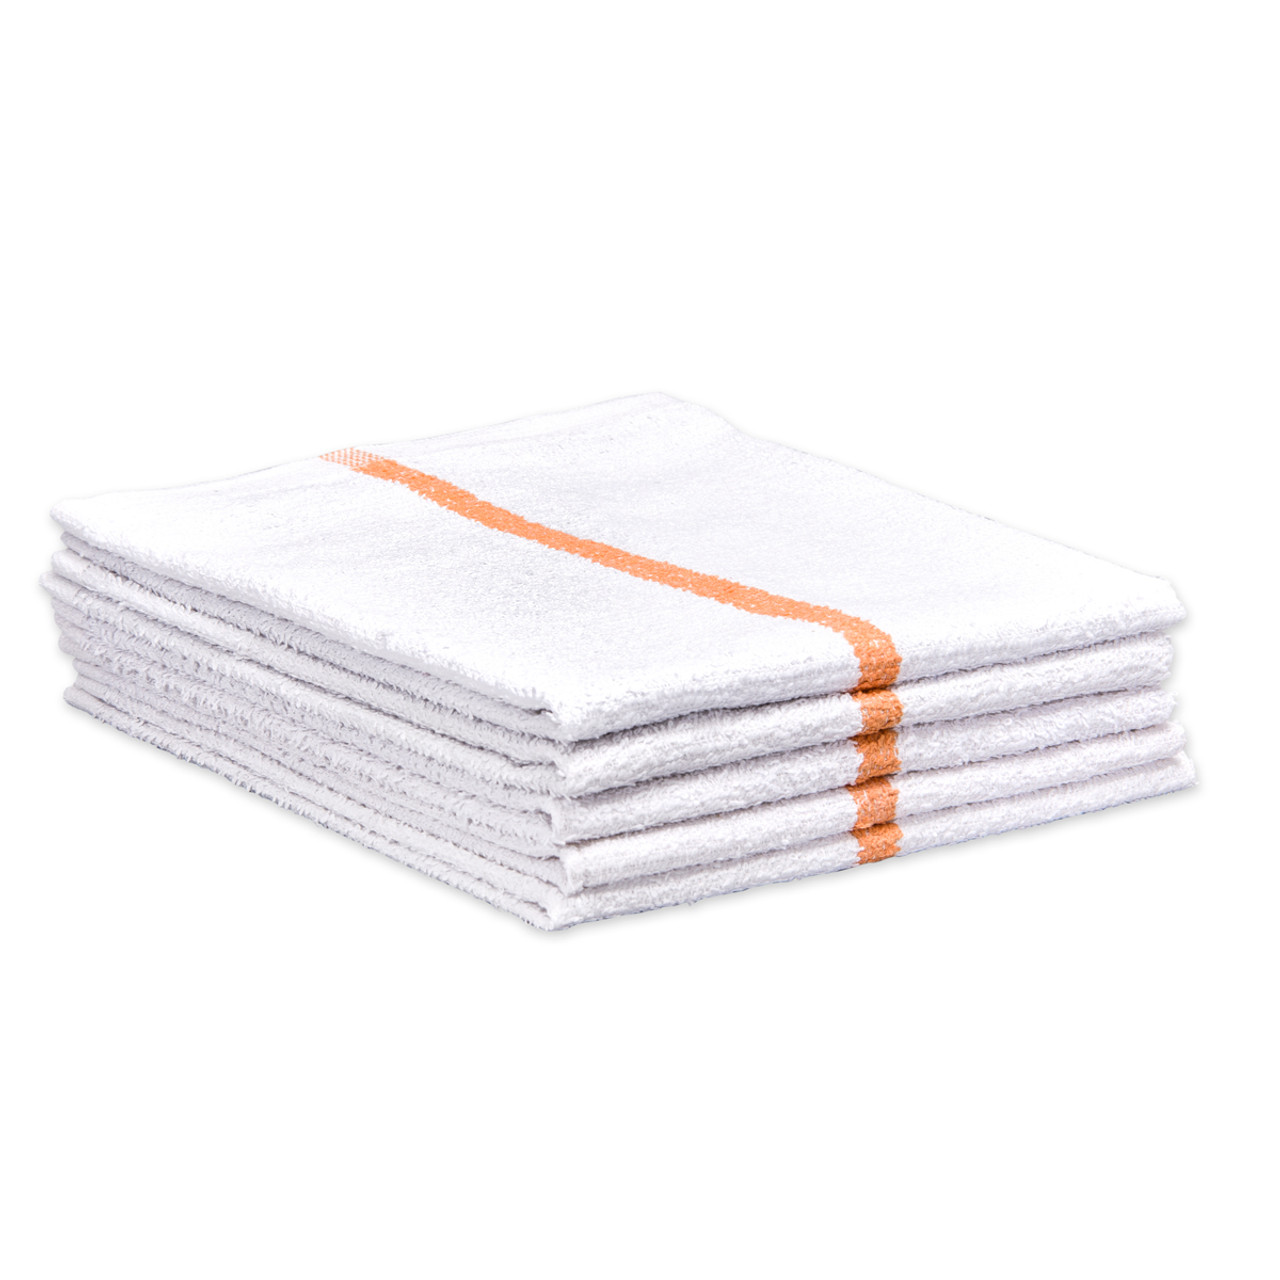 Bulk Bar Towels 100% Cotton Terry 16x19 Solid Colors 50 Lb. Box